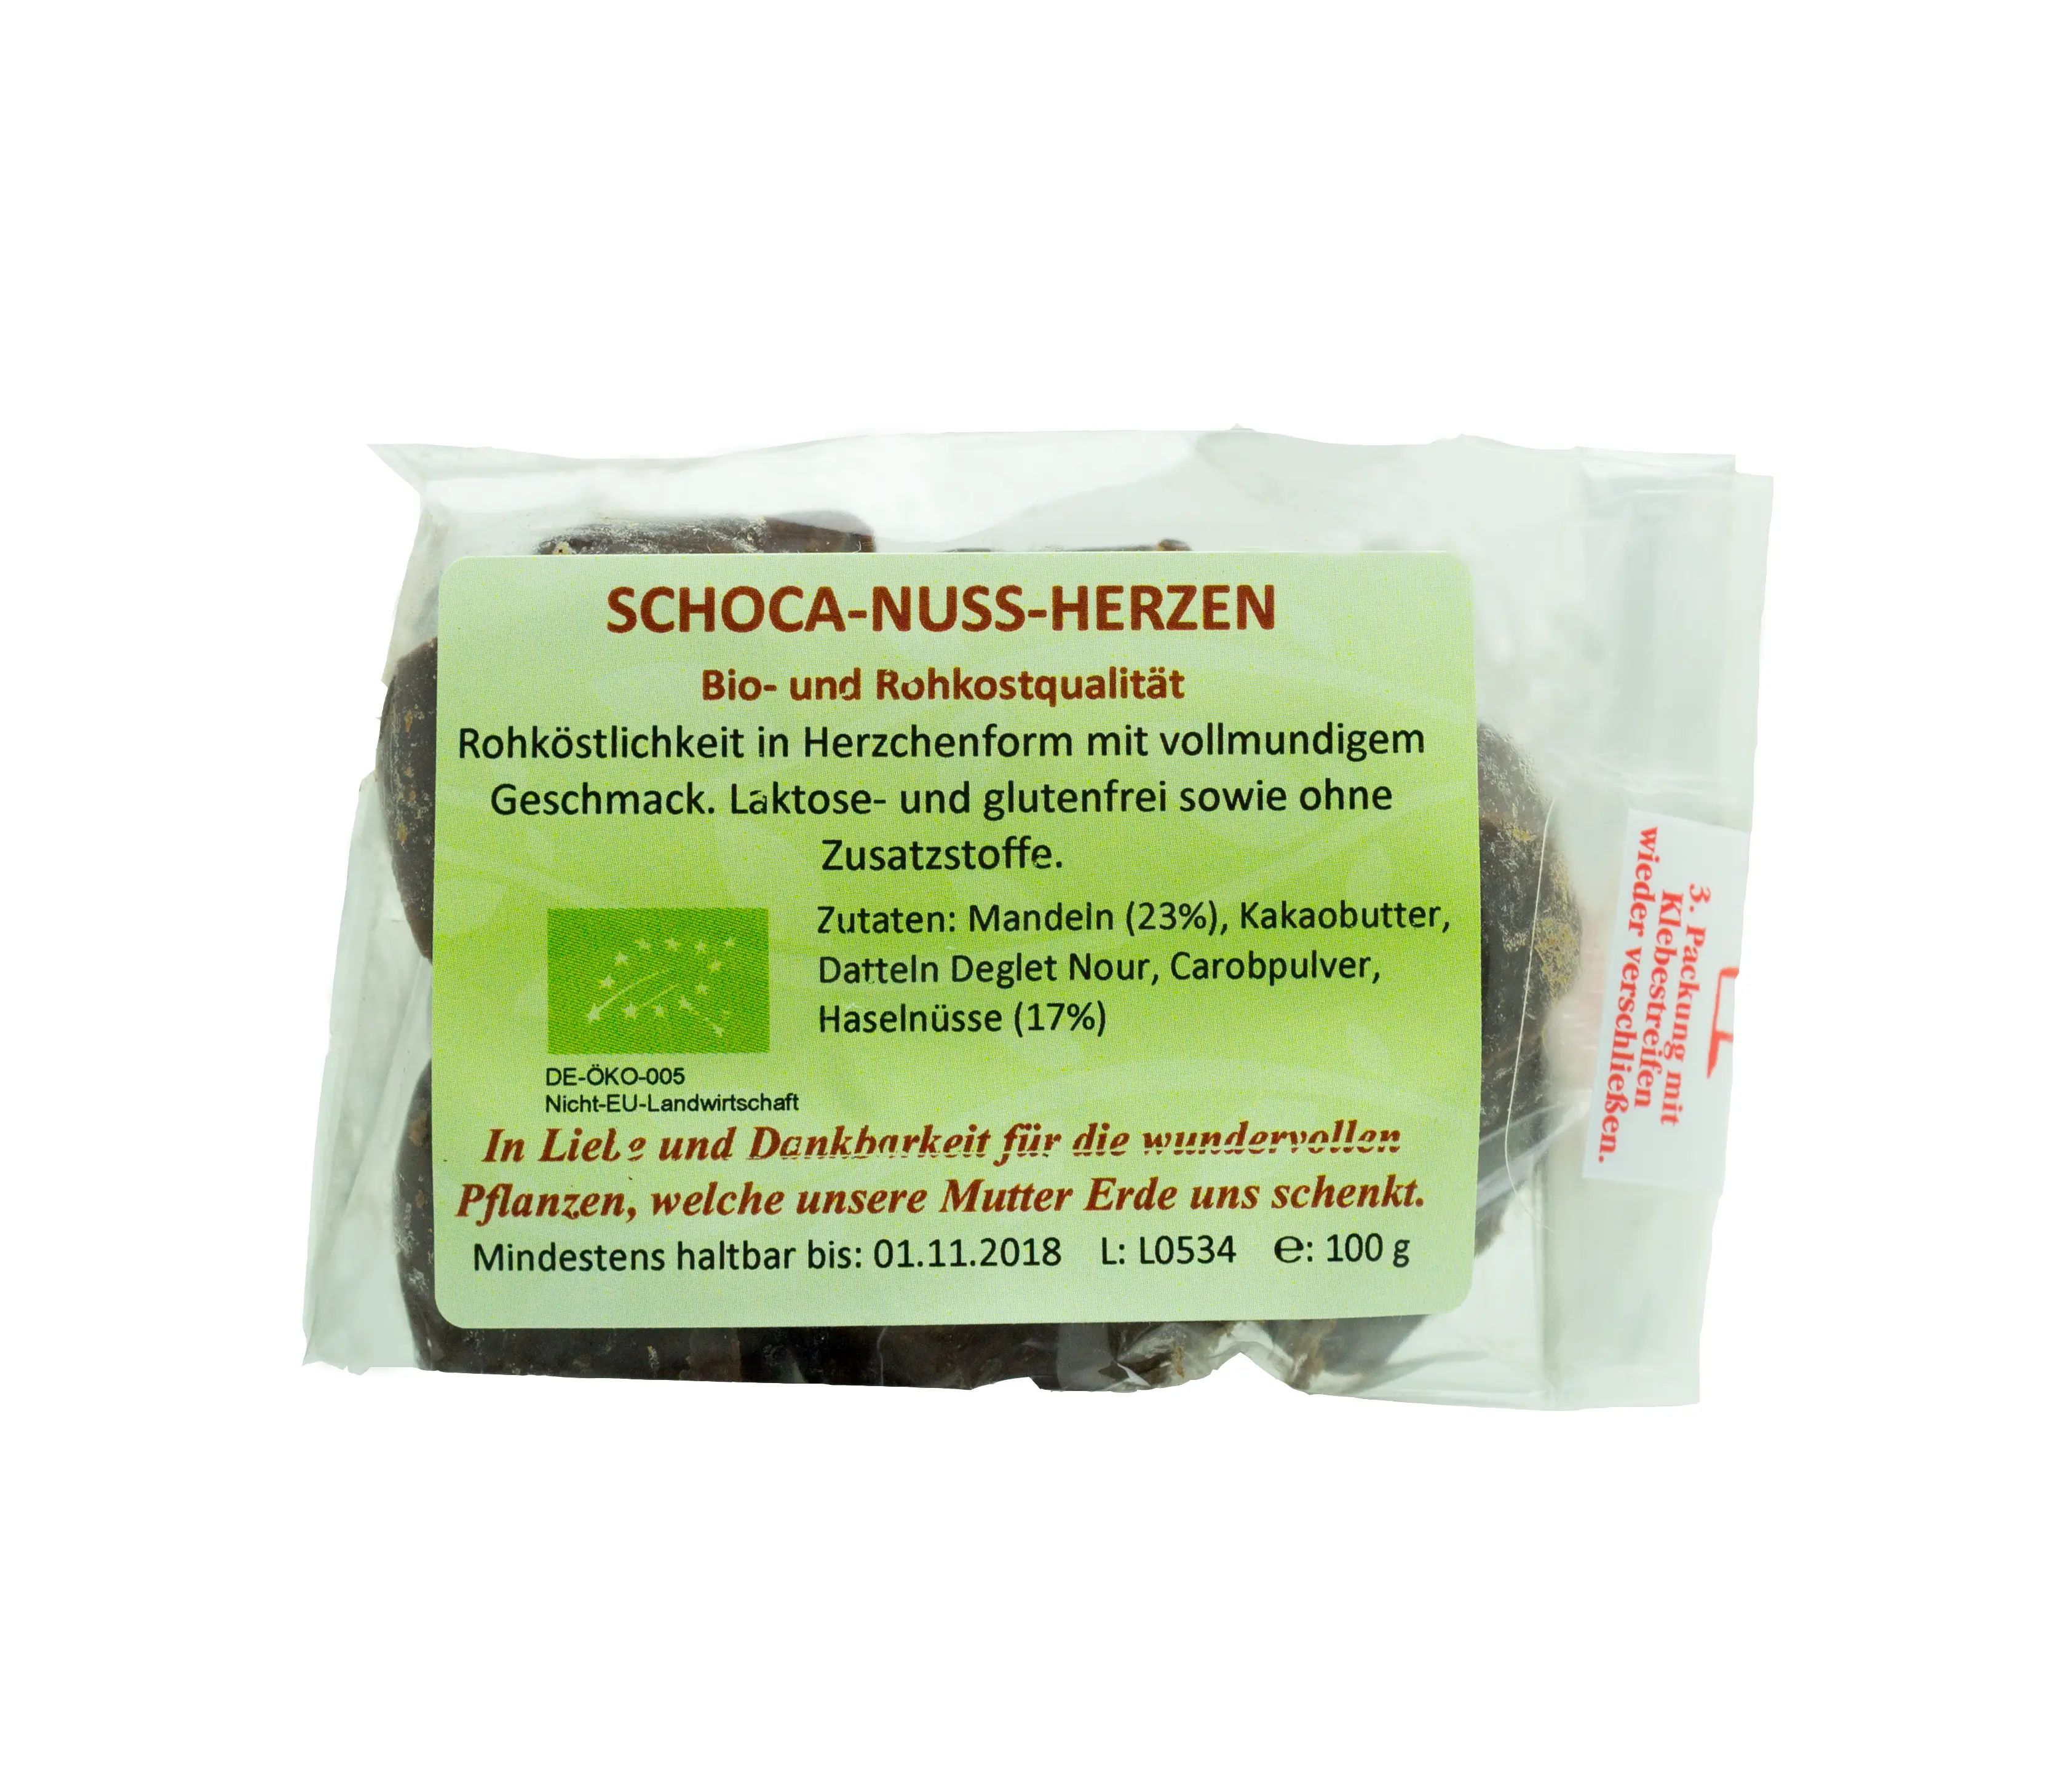 Schoca-Nuss-Herzen Bio, Rohkost Image